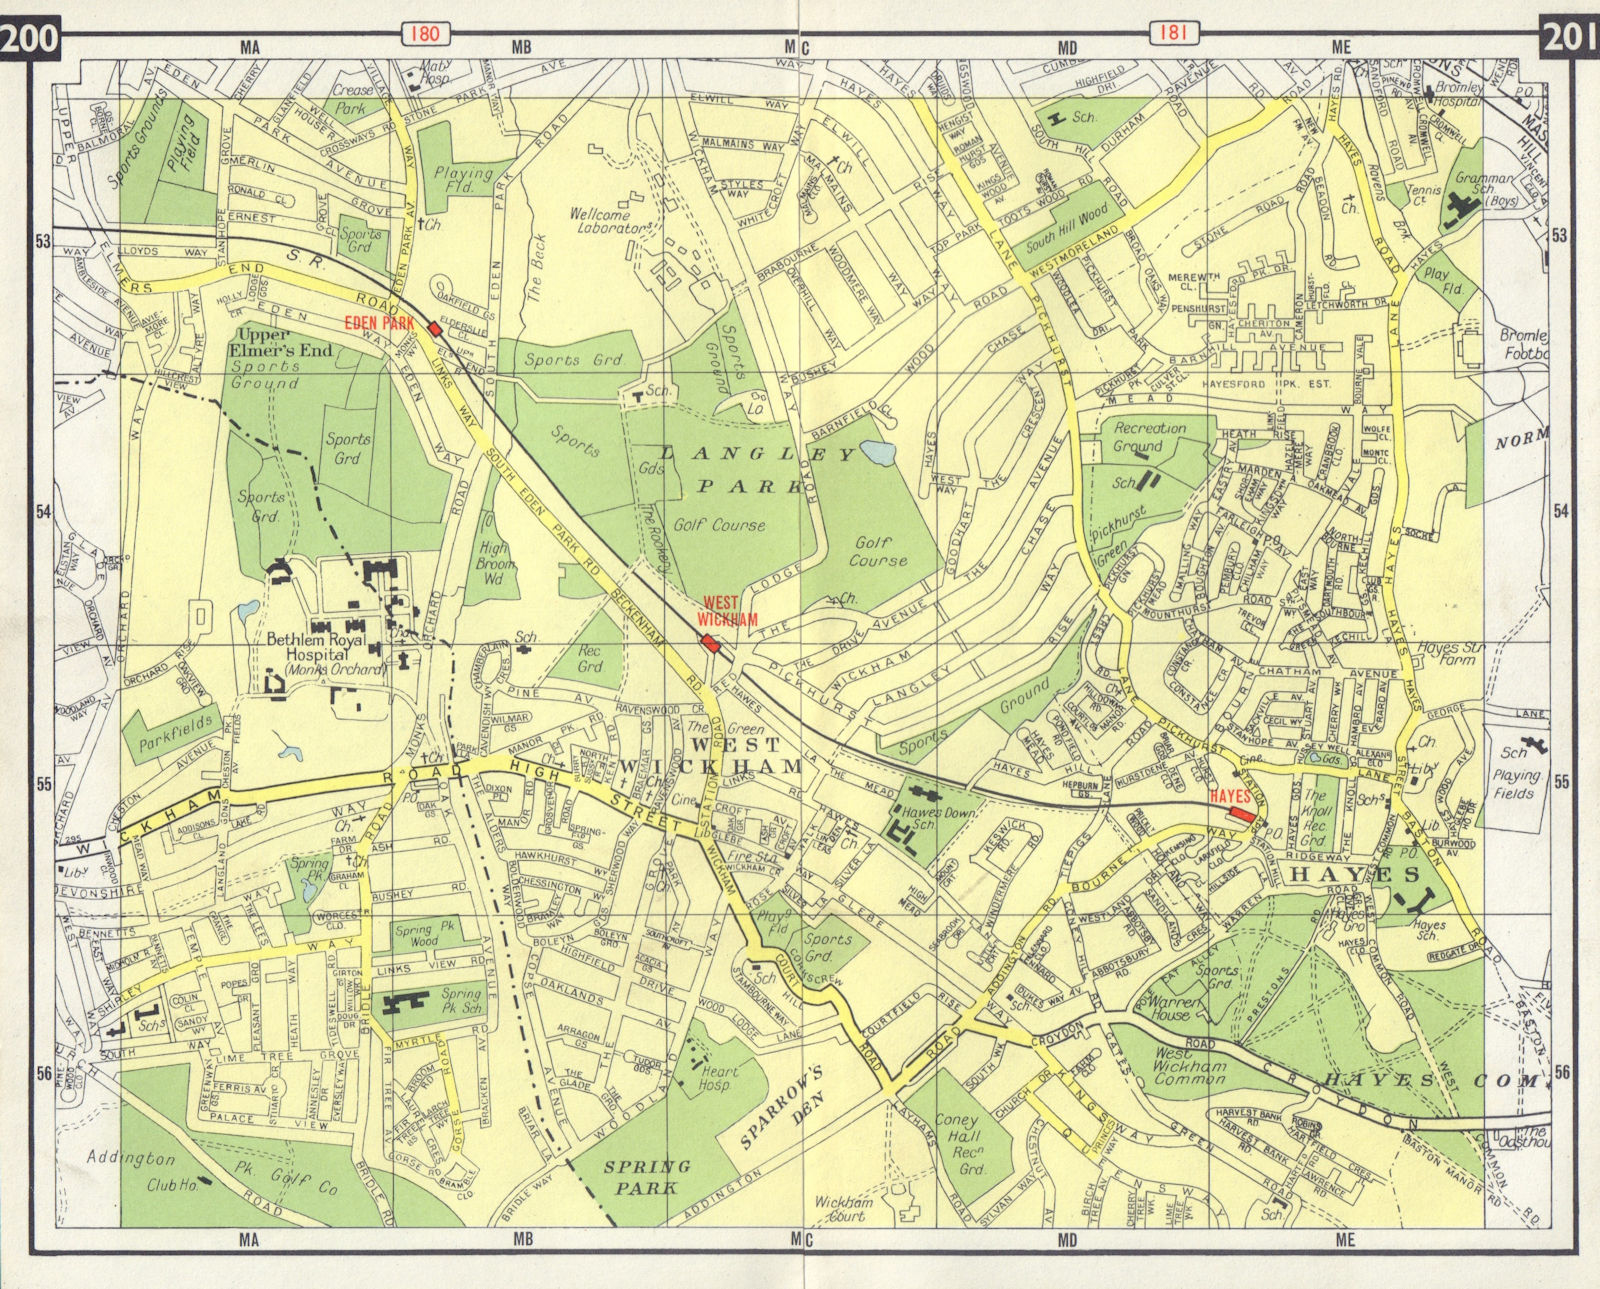 SE LONDON West Wickham Hayes Eden Park Upper Elmers End Bromley 1965 old map